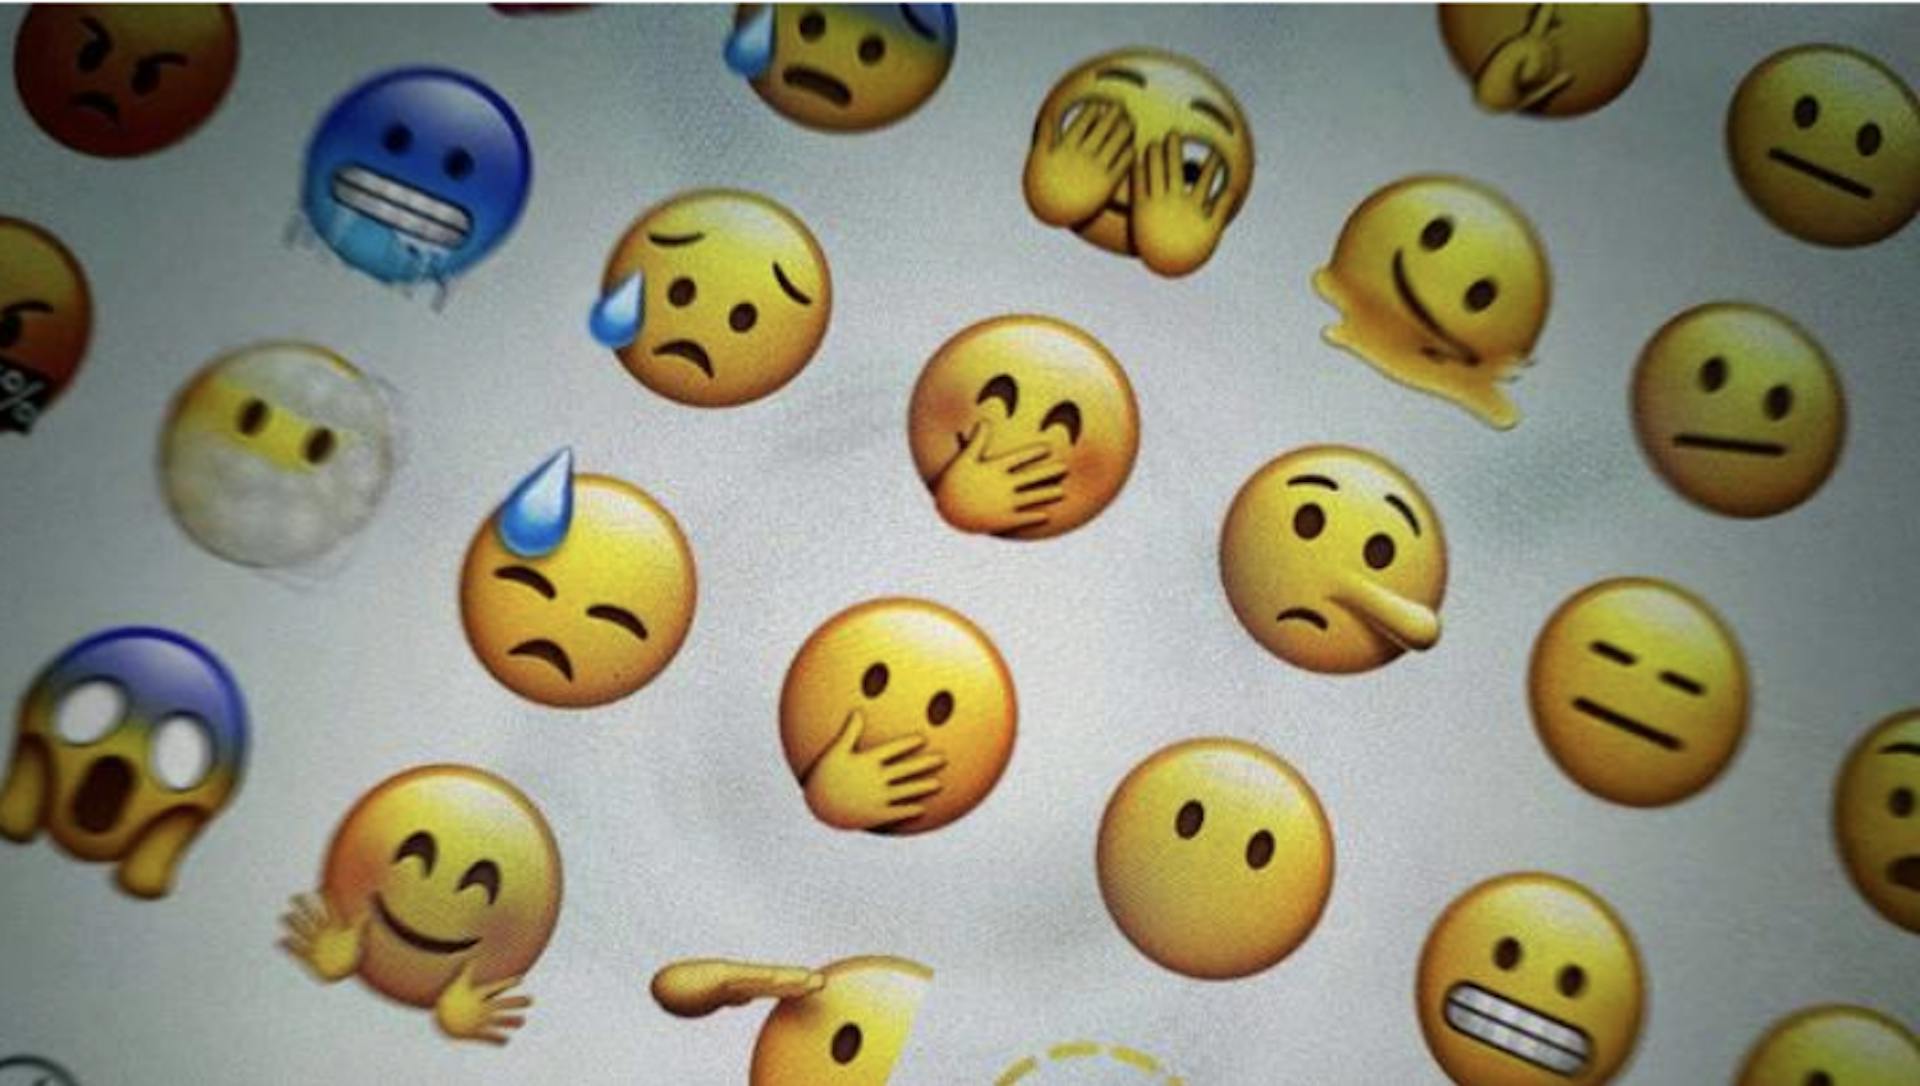 El estafador envió un conjunto de 25 emojis NFT, en lugar de obras de arte / Fuente: vm.ru